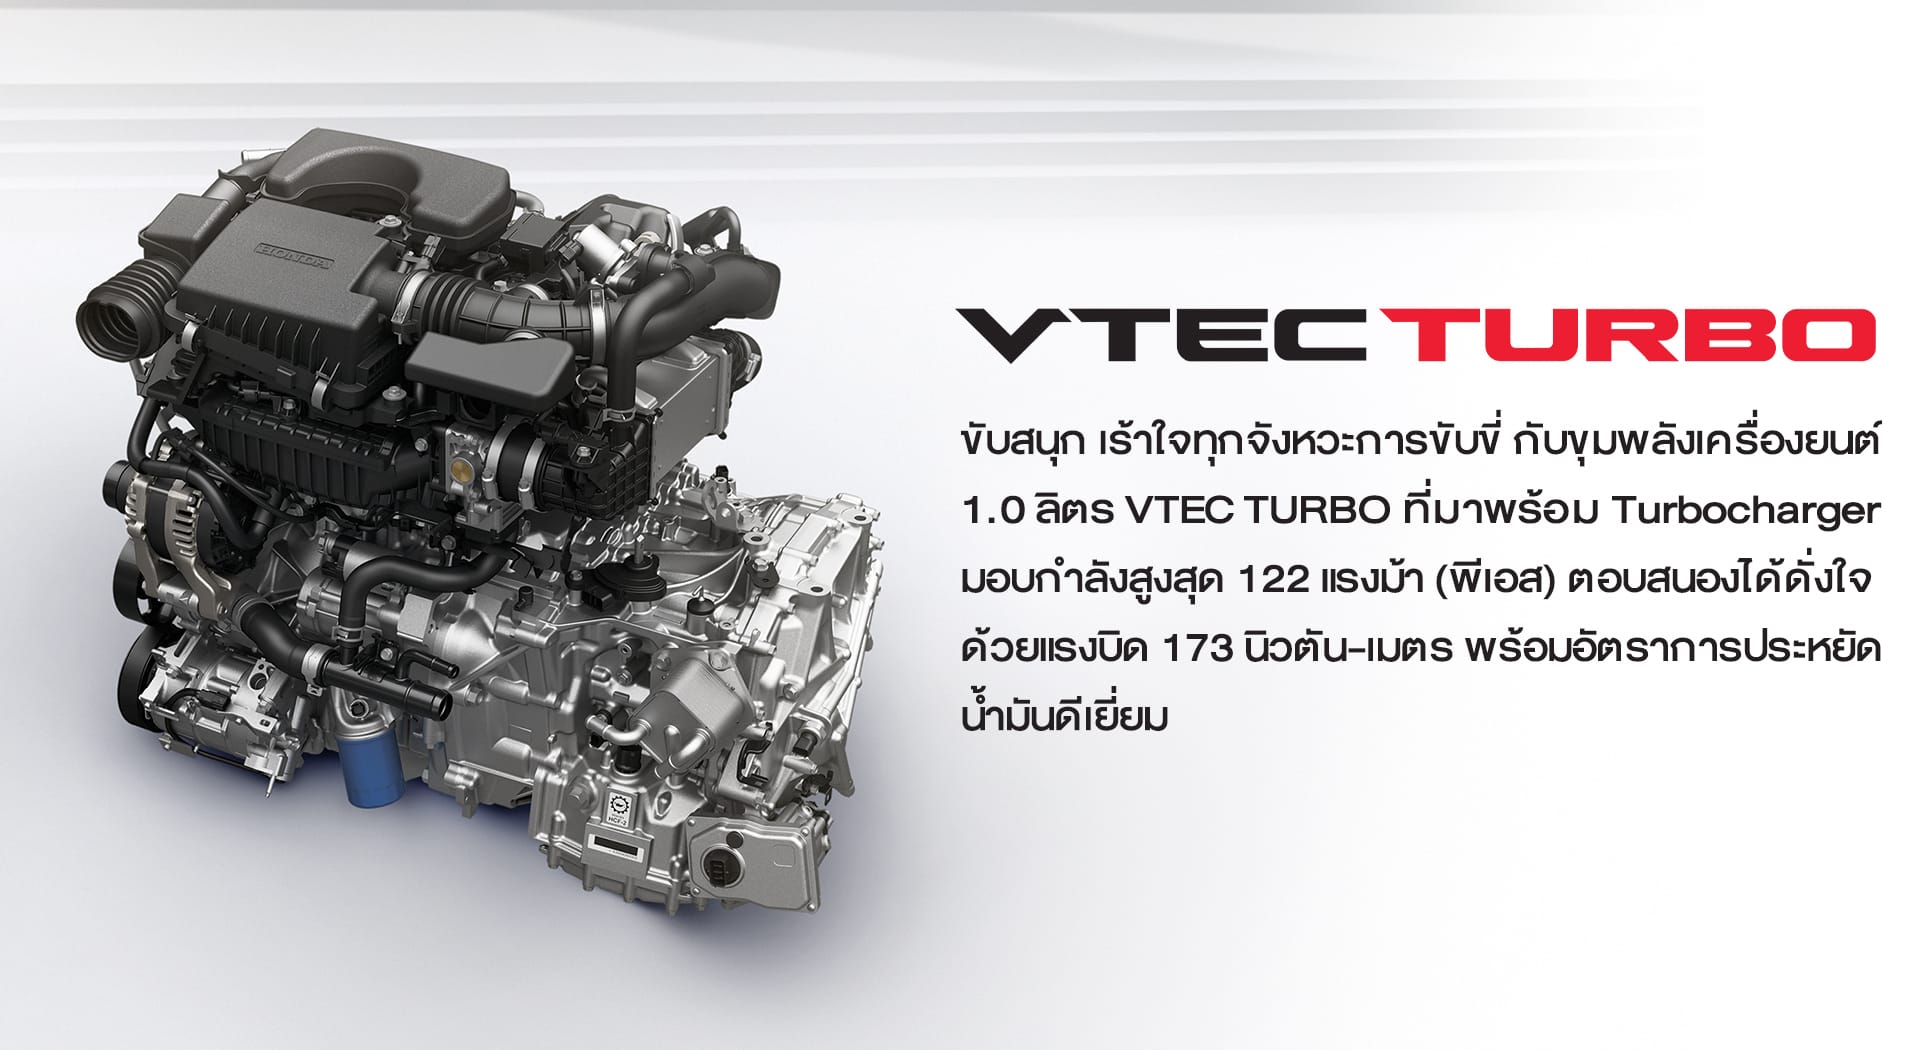 เครื่องยนต์ 1.0 ลิตร VTEC TURBO